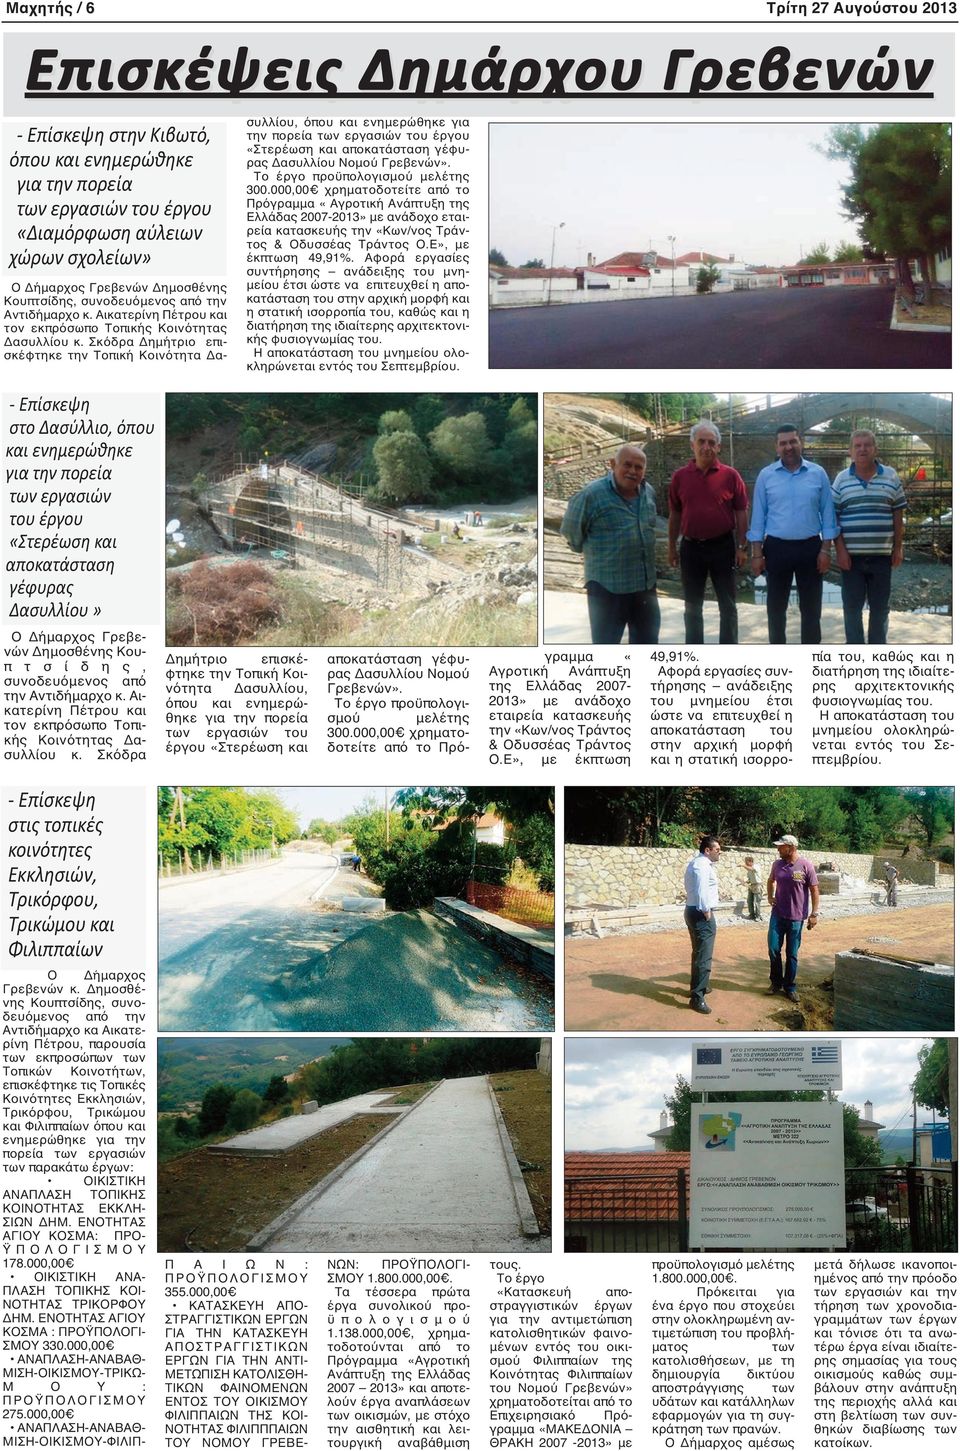 Σκόδρα Δημήτριο επισκέφτηκε την Τοπική Κοινότητα Δασυλλίου, όπου και ενημερώθηκε για την πορεία των εργασιών του έργου «Στερέωση και αποκατάσταση γέφυρας Δασυλλίου Νομού Γρεβενών».